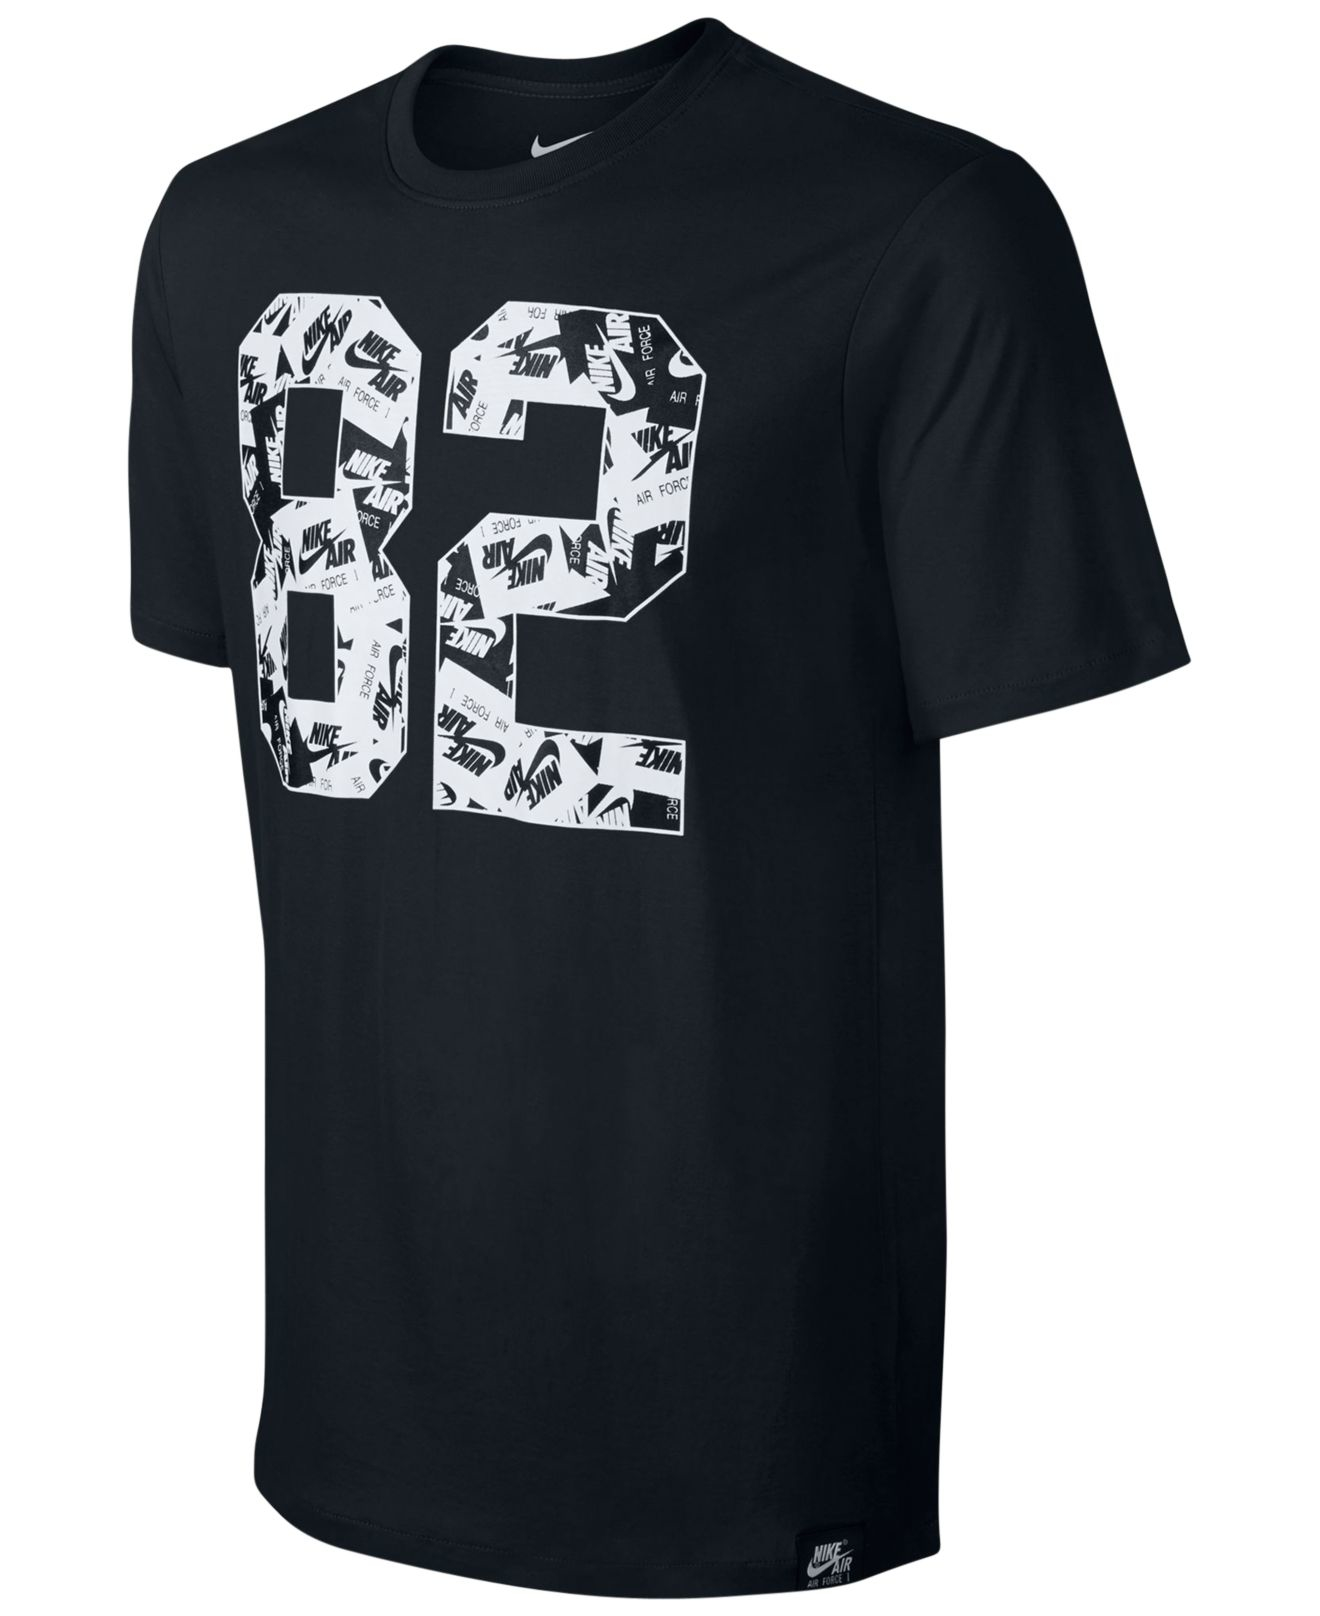 Nike Men's Af-1 82 Graphic Print T-shirt in Black for Men - Lyst